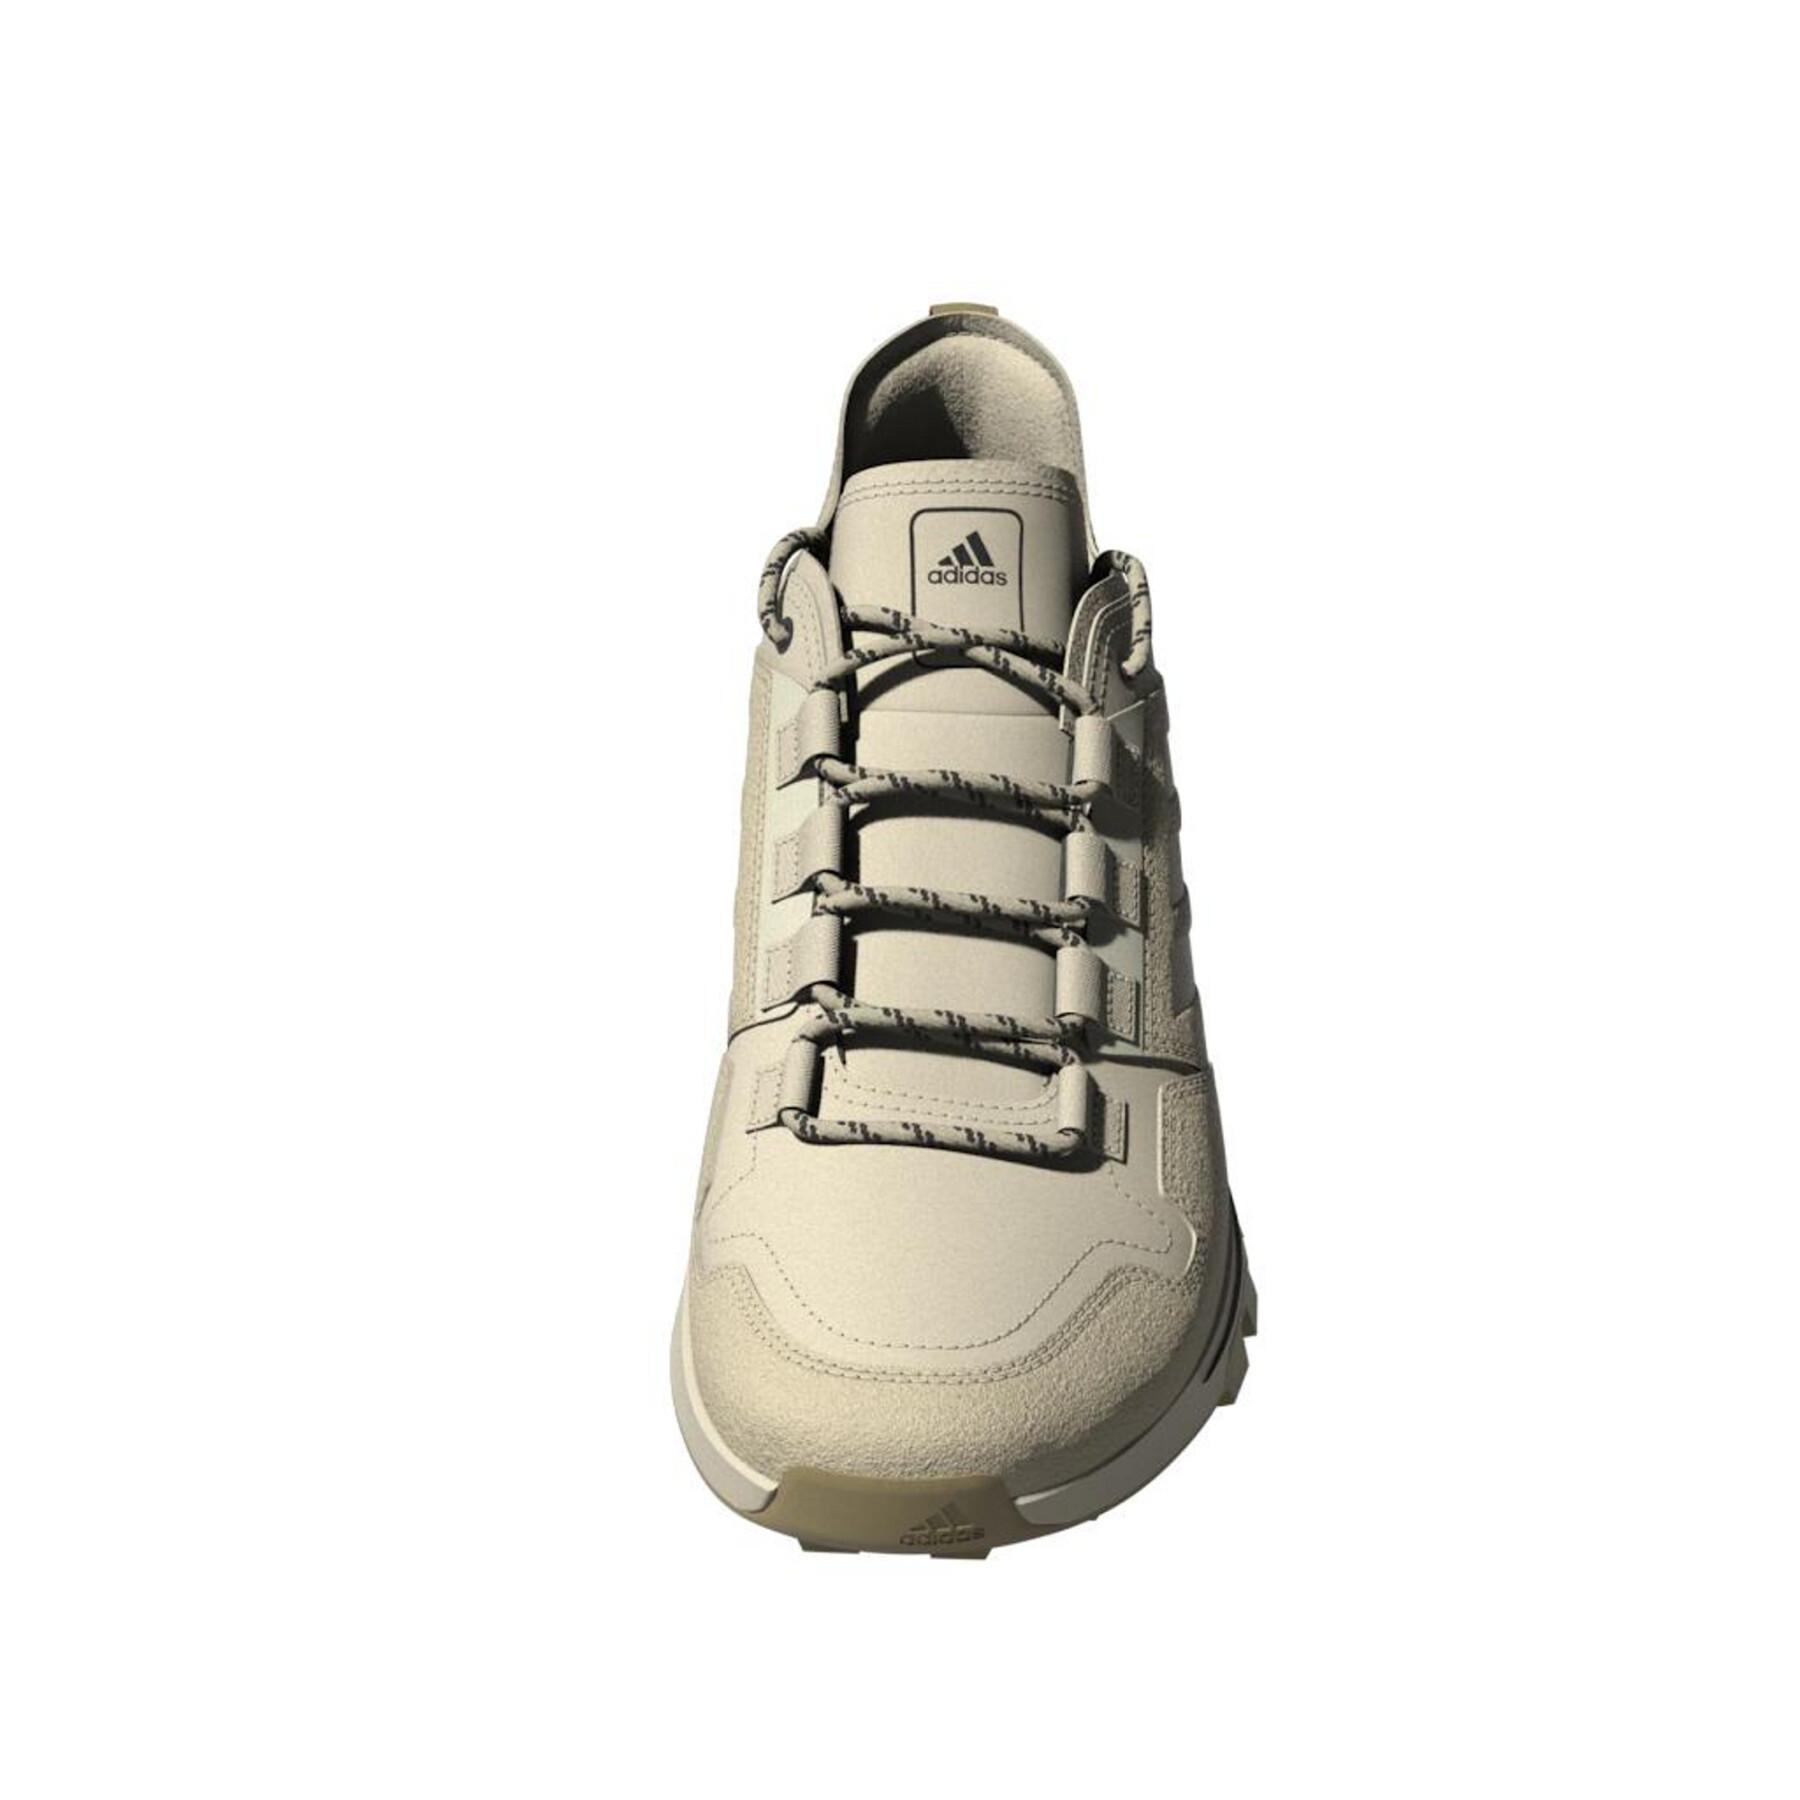 Zapatos de senderismo adidas Terrex Urban Low Leather